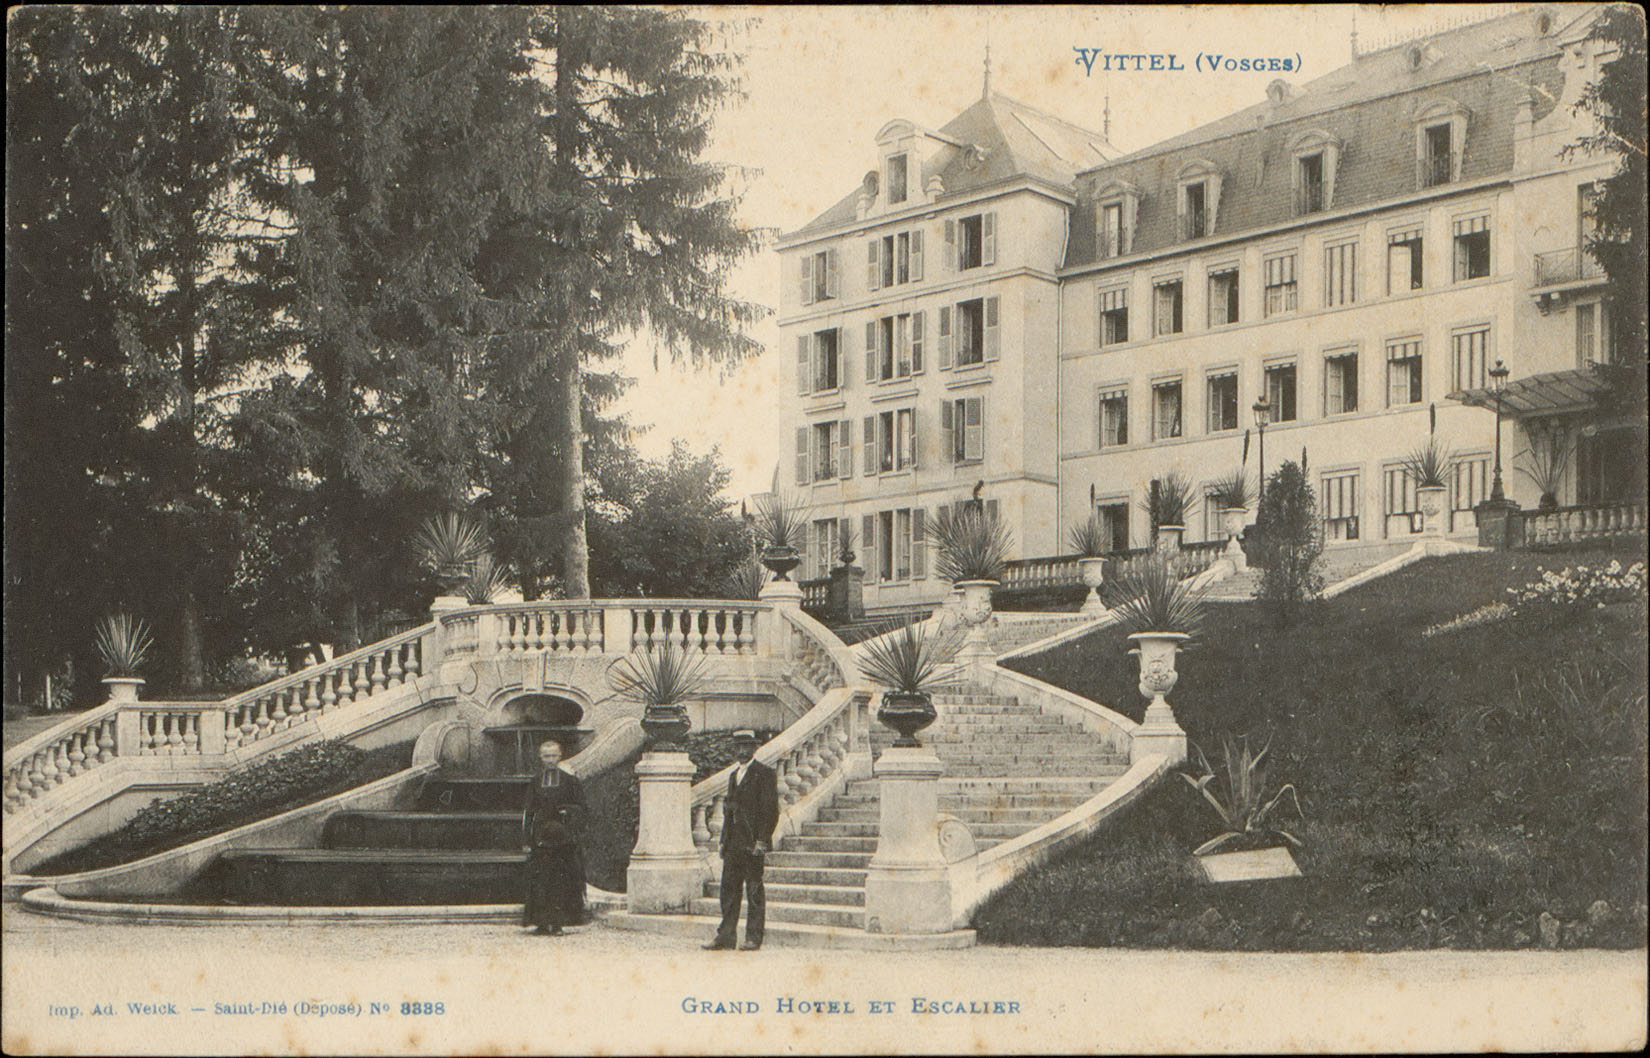 Contenu du Vittel (Vosges), Grand Hôtel et Escalier